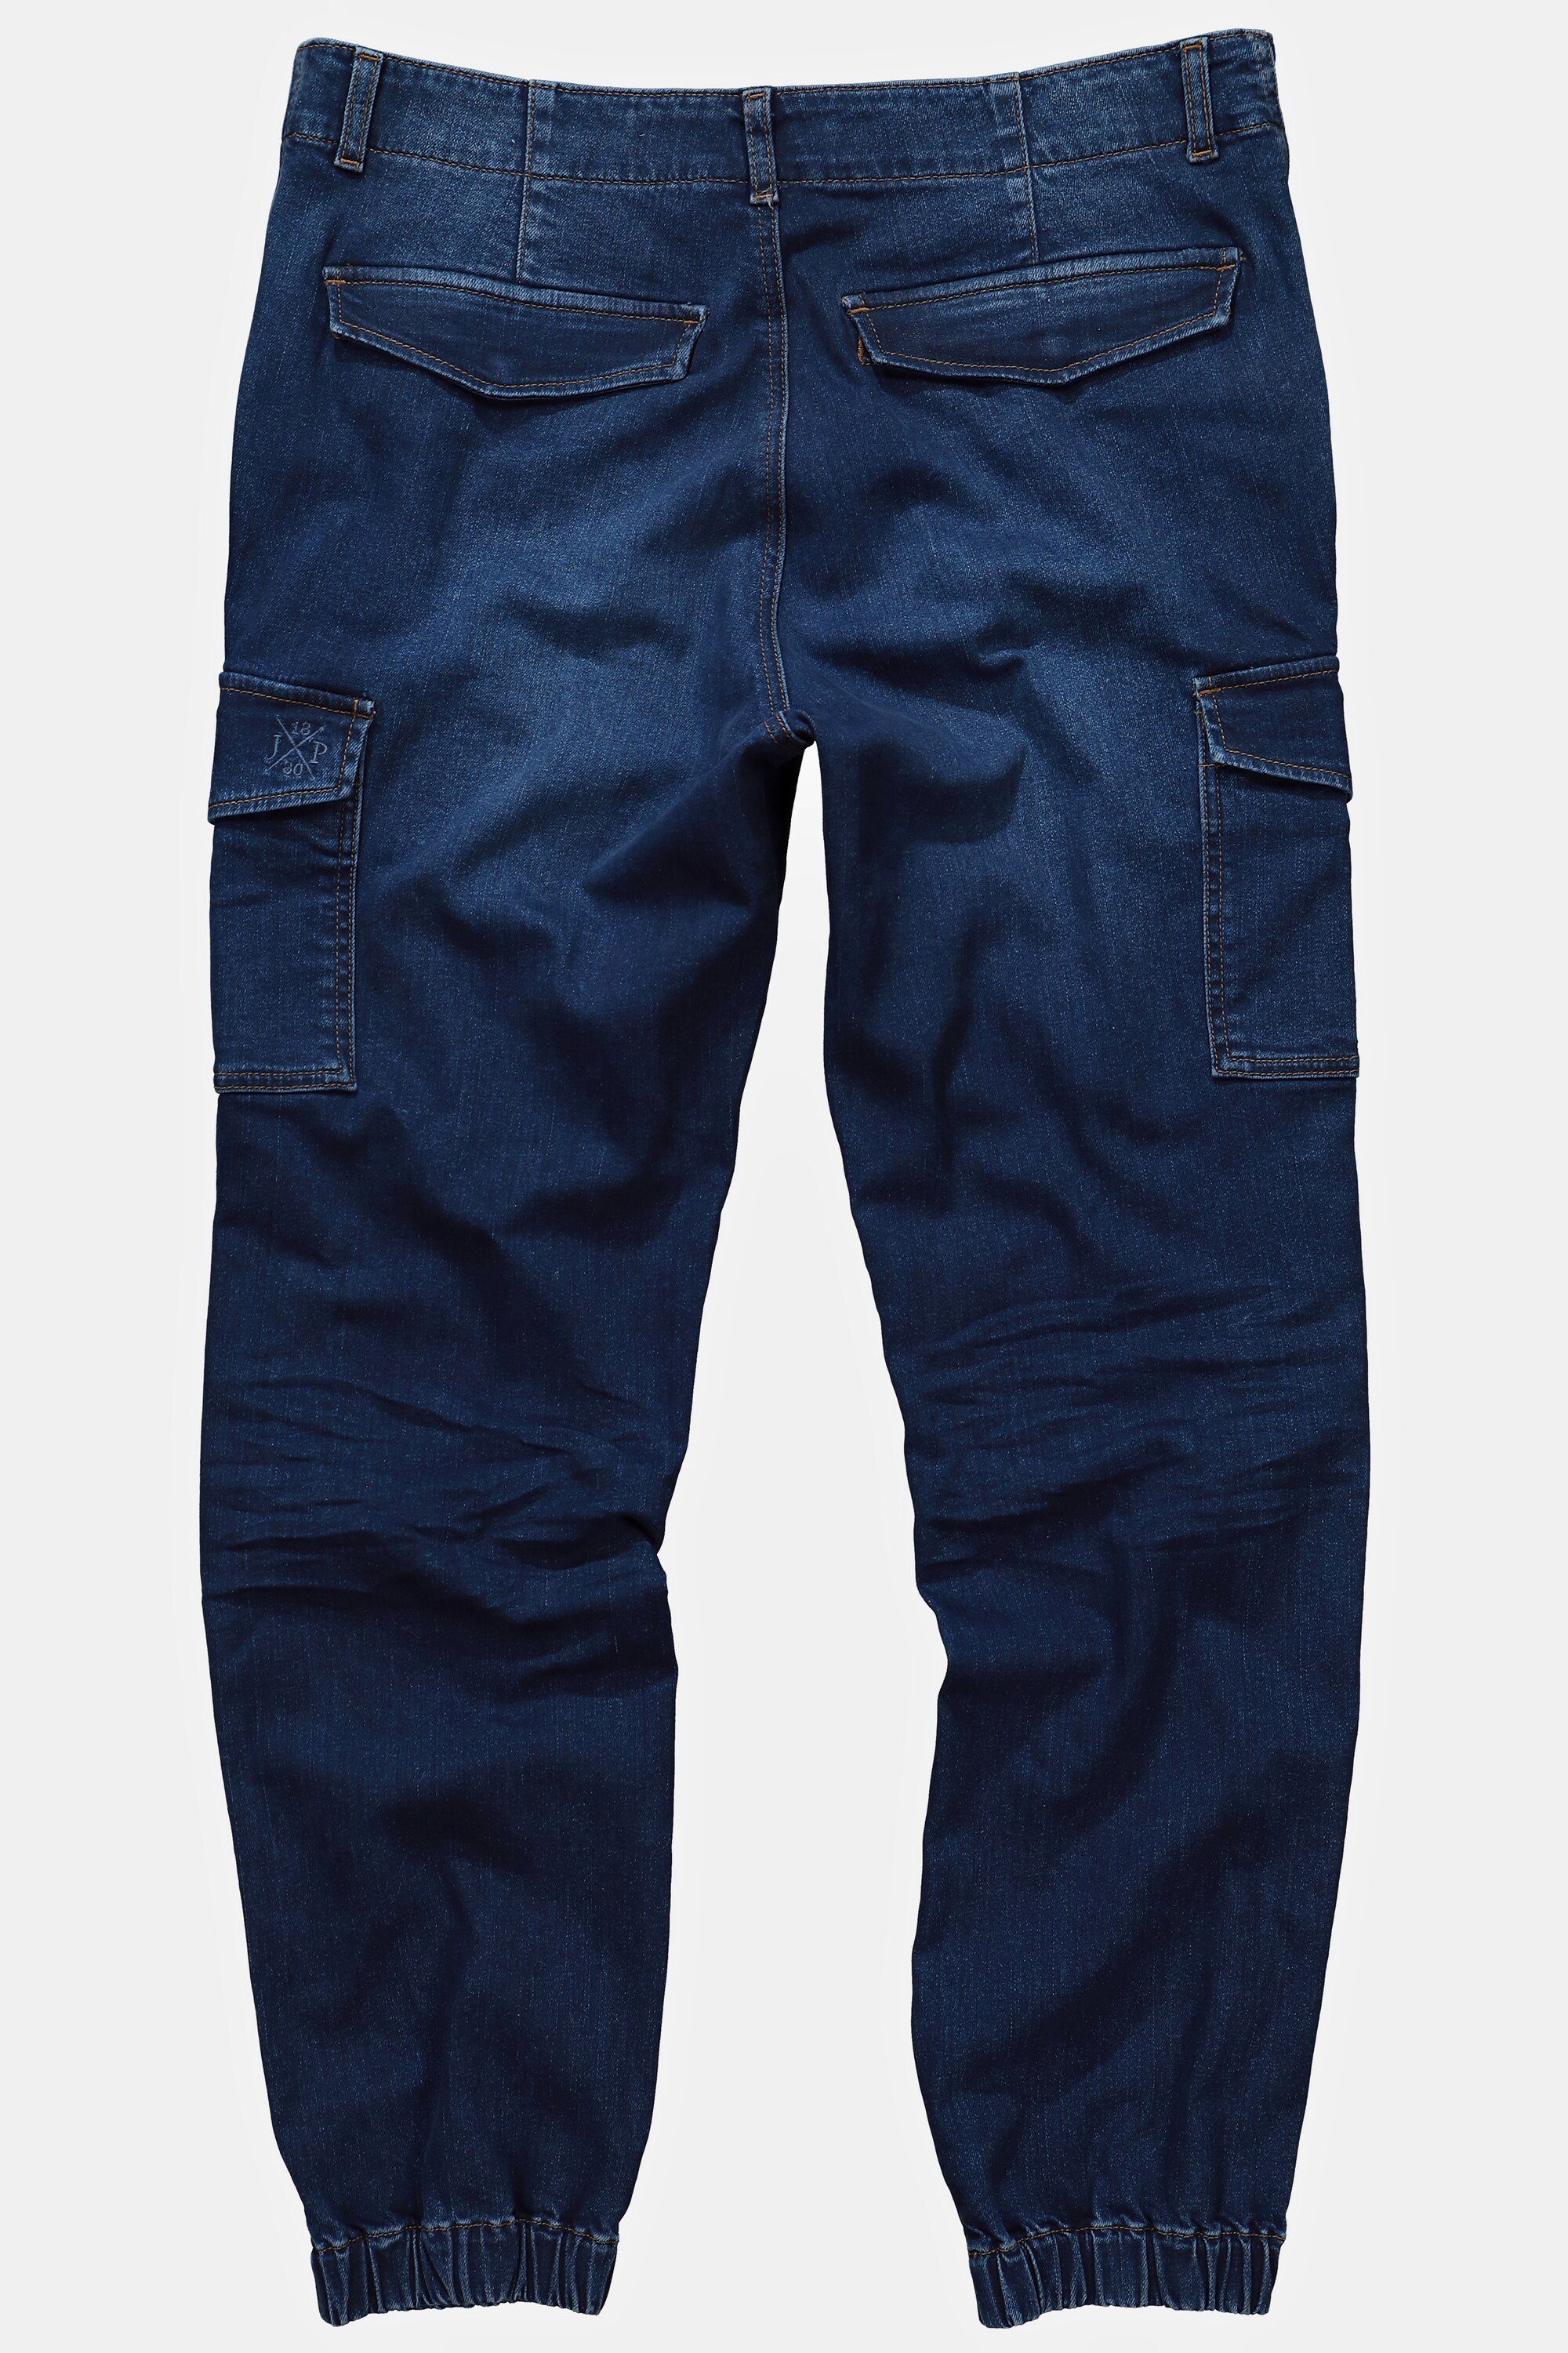 5-Pocket-Jeans Denim denim blue dark FLEXNAMIC® Cargo-Jeans JP1880 5-Pocket